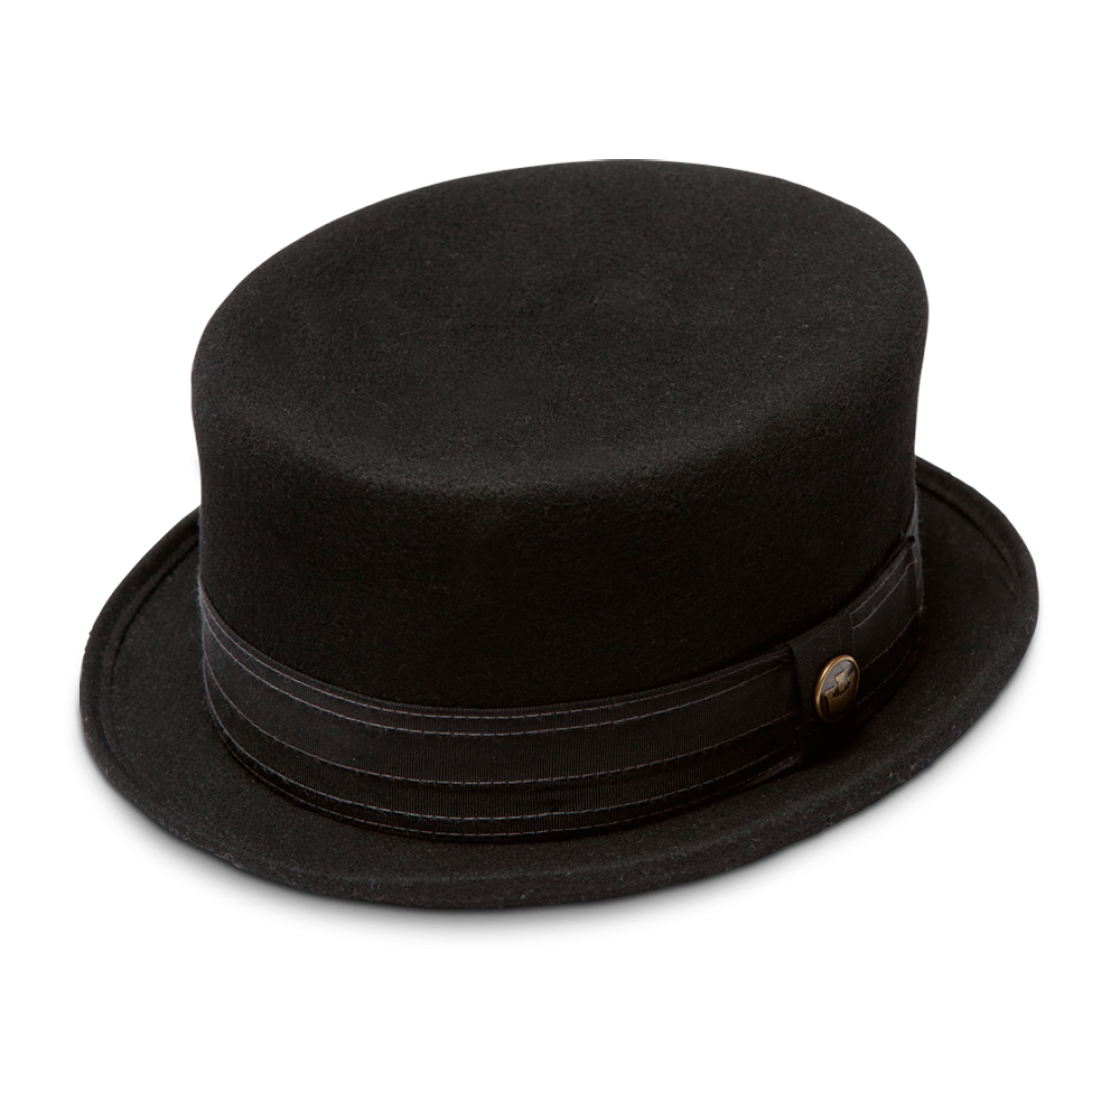 Black Magic Hat Download Free Image PNG Image